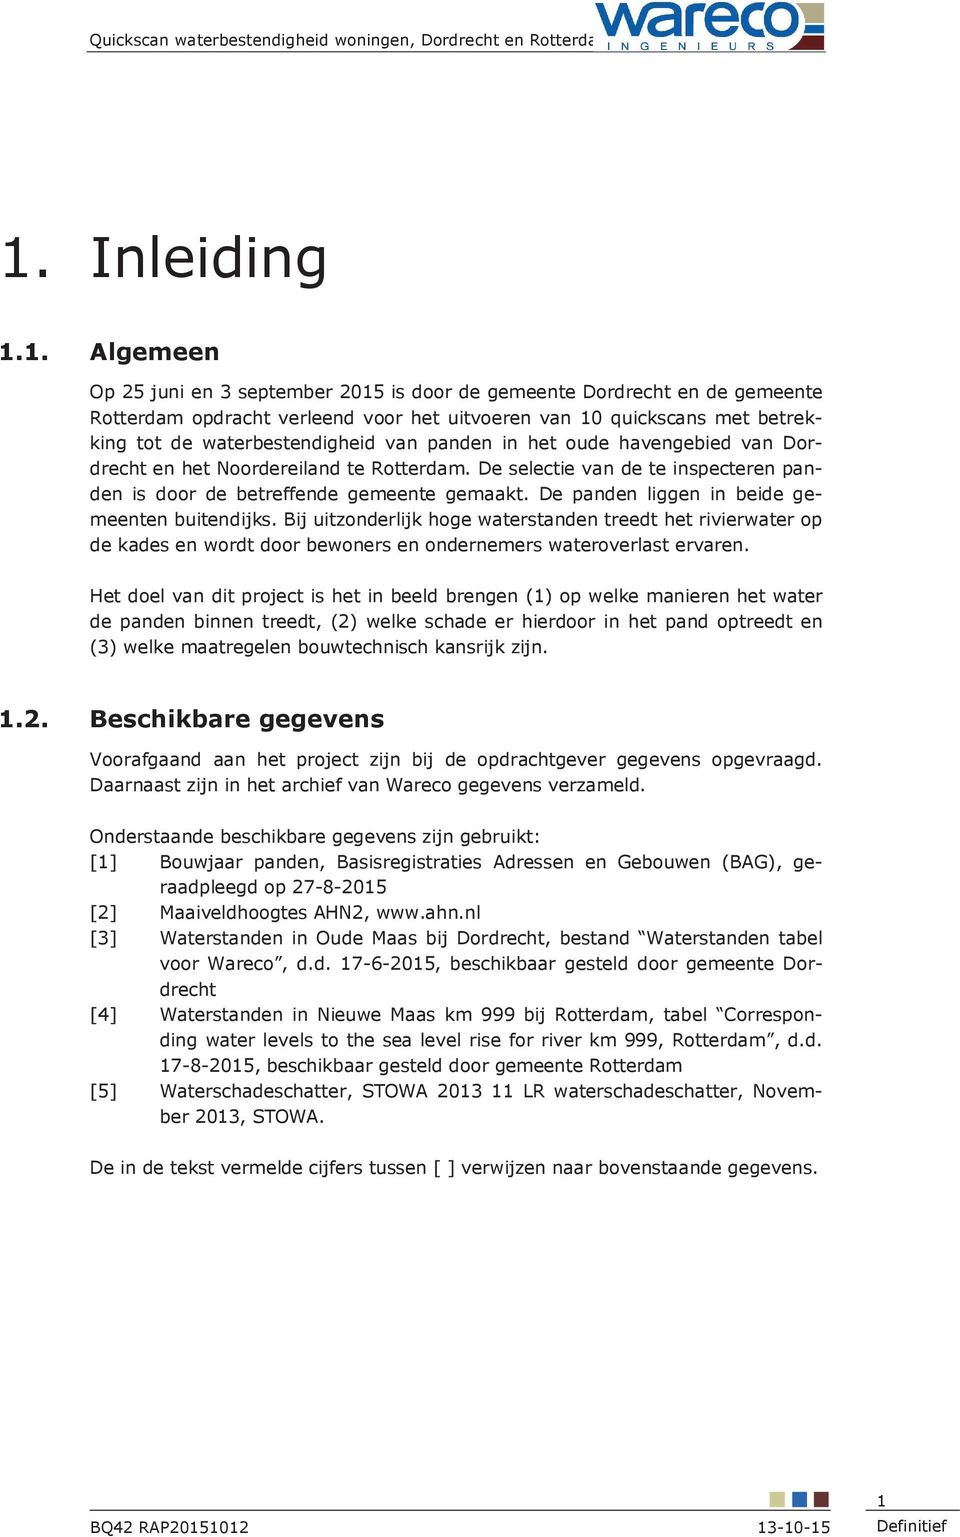 1. Algemeen Op 25 juni en 3 september 2015 is door de gemeente Dordrecht en de gemeente Rotterdam opdracht verleend voor het uitvoeren van 10 quickscans met betrekking tot de waterbestendigheid van